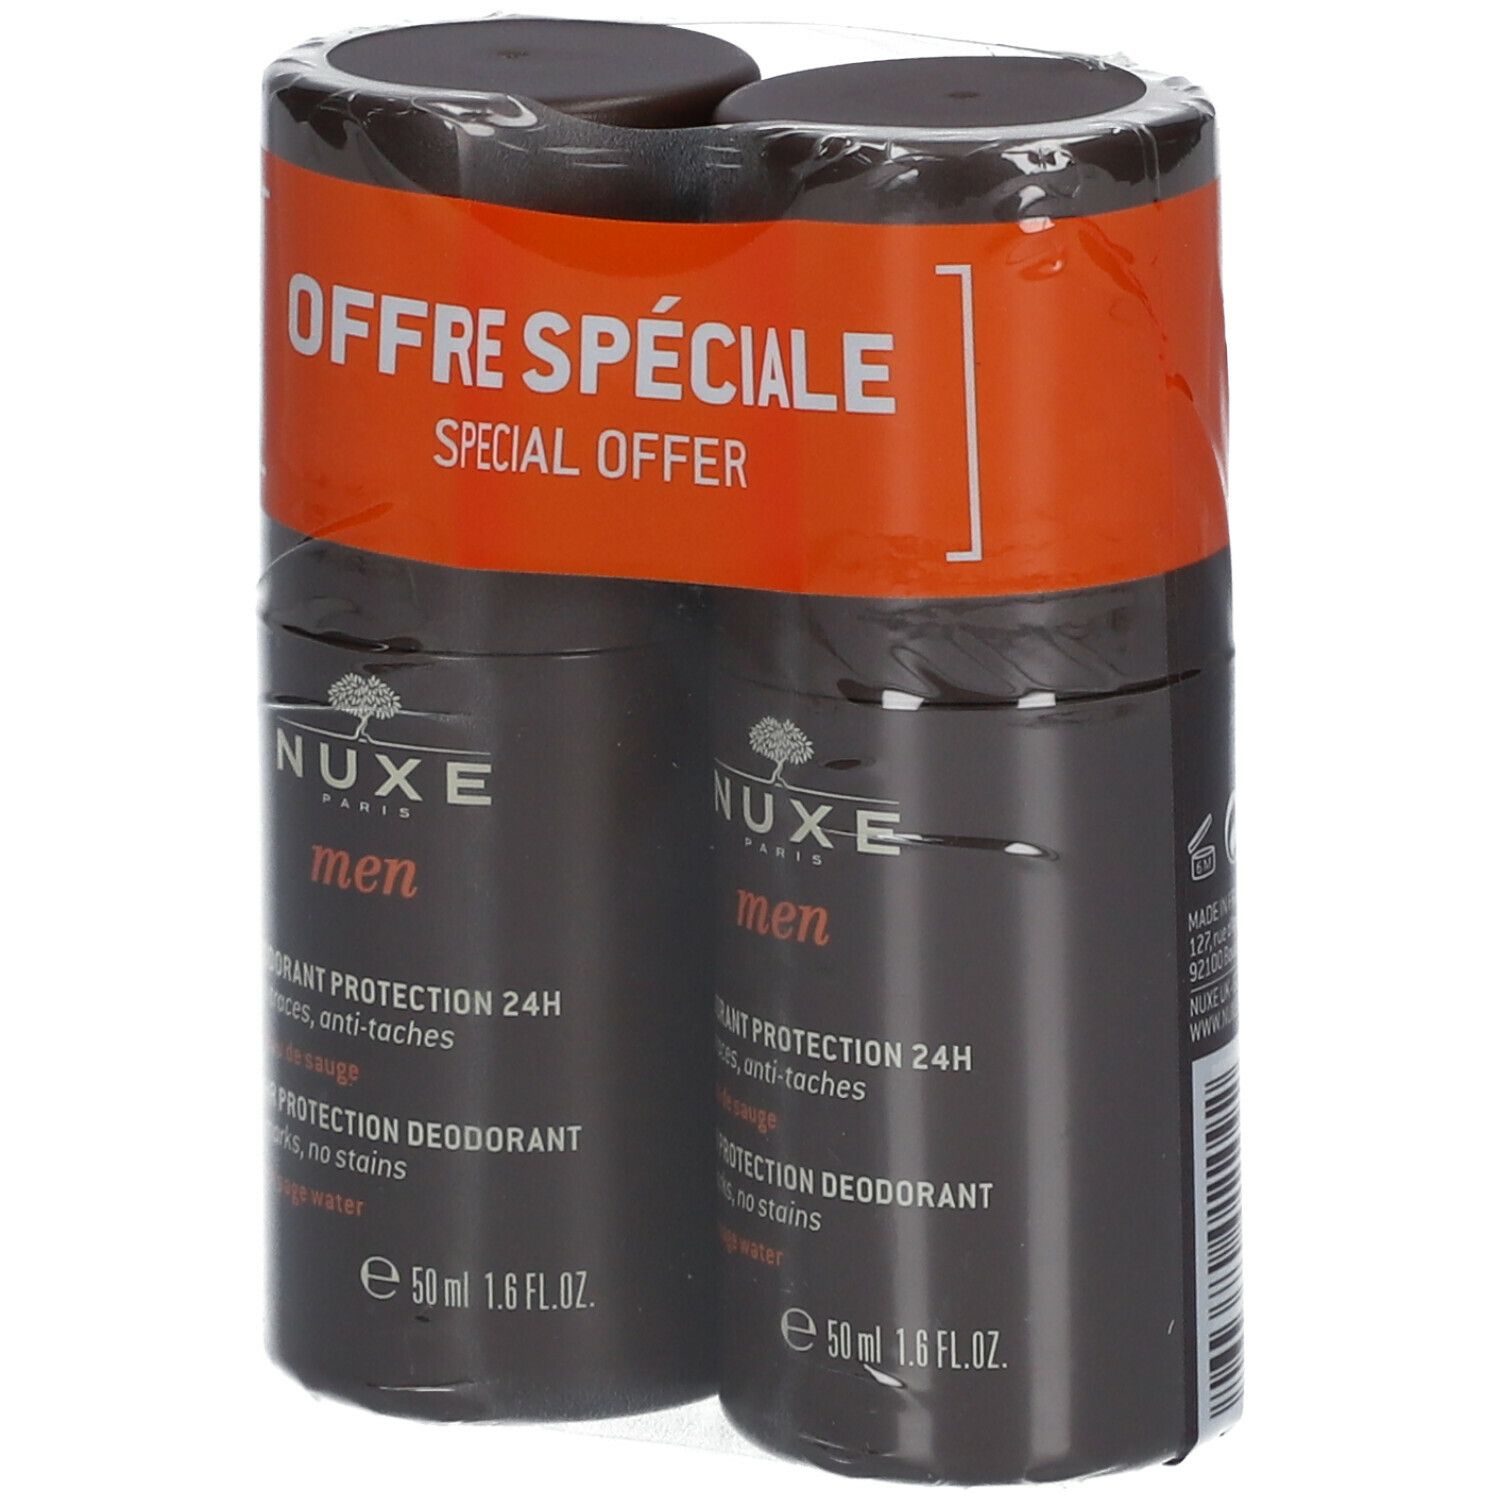 NUXE Men aluminiumfreies Deodorant mit 24H Schutz gegen Schweiß und Körpergeruch Doppelpack